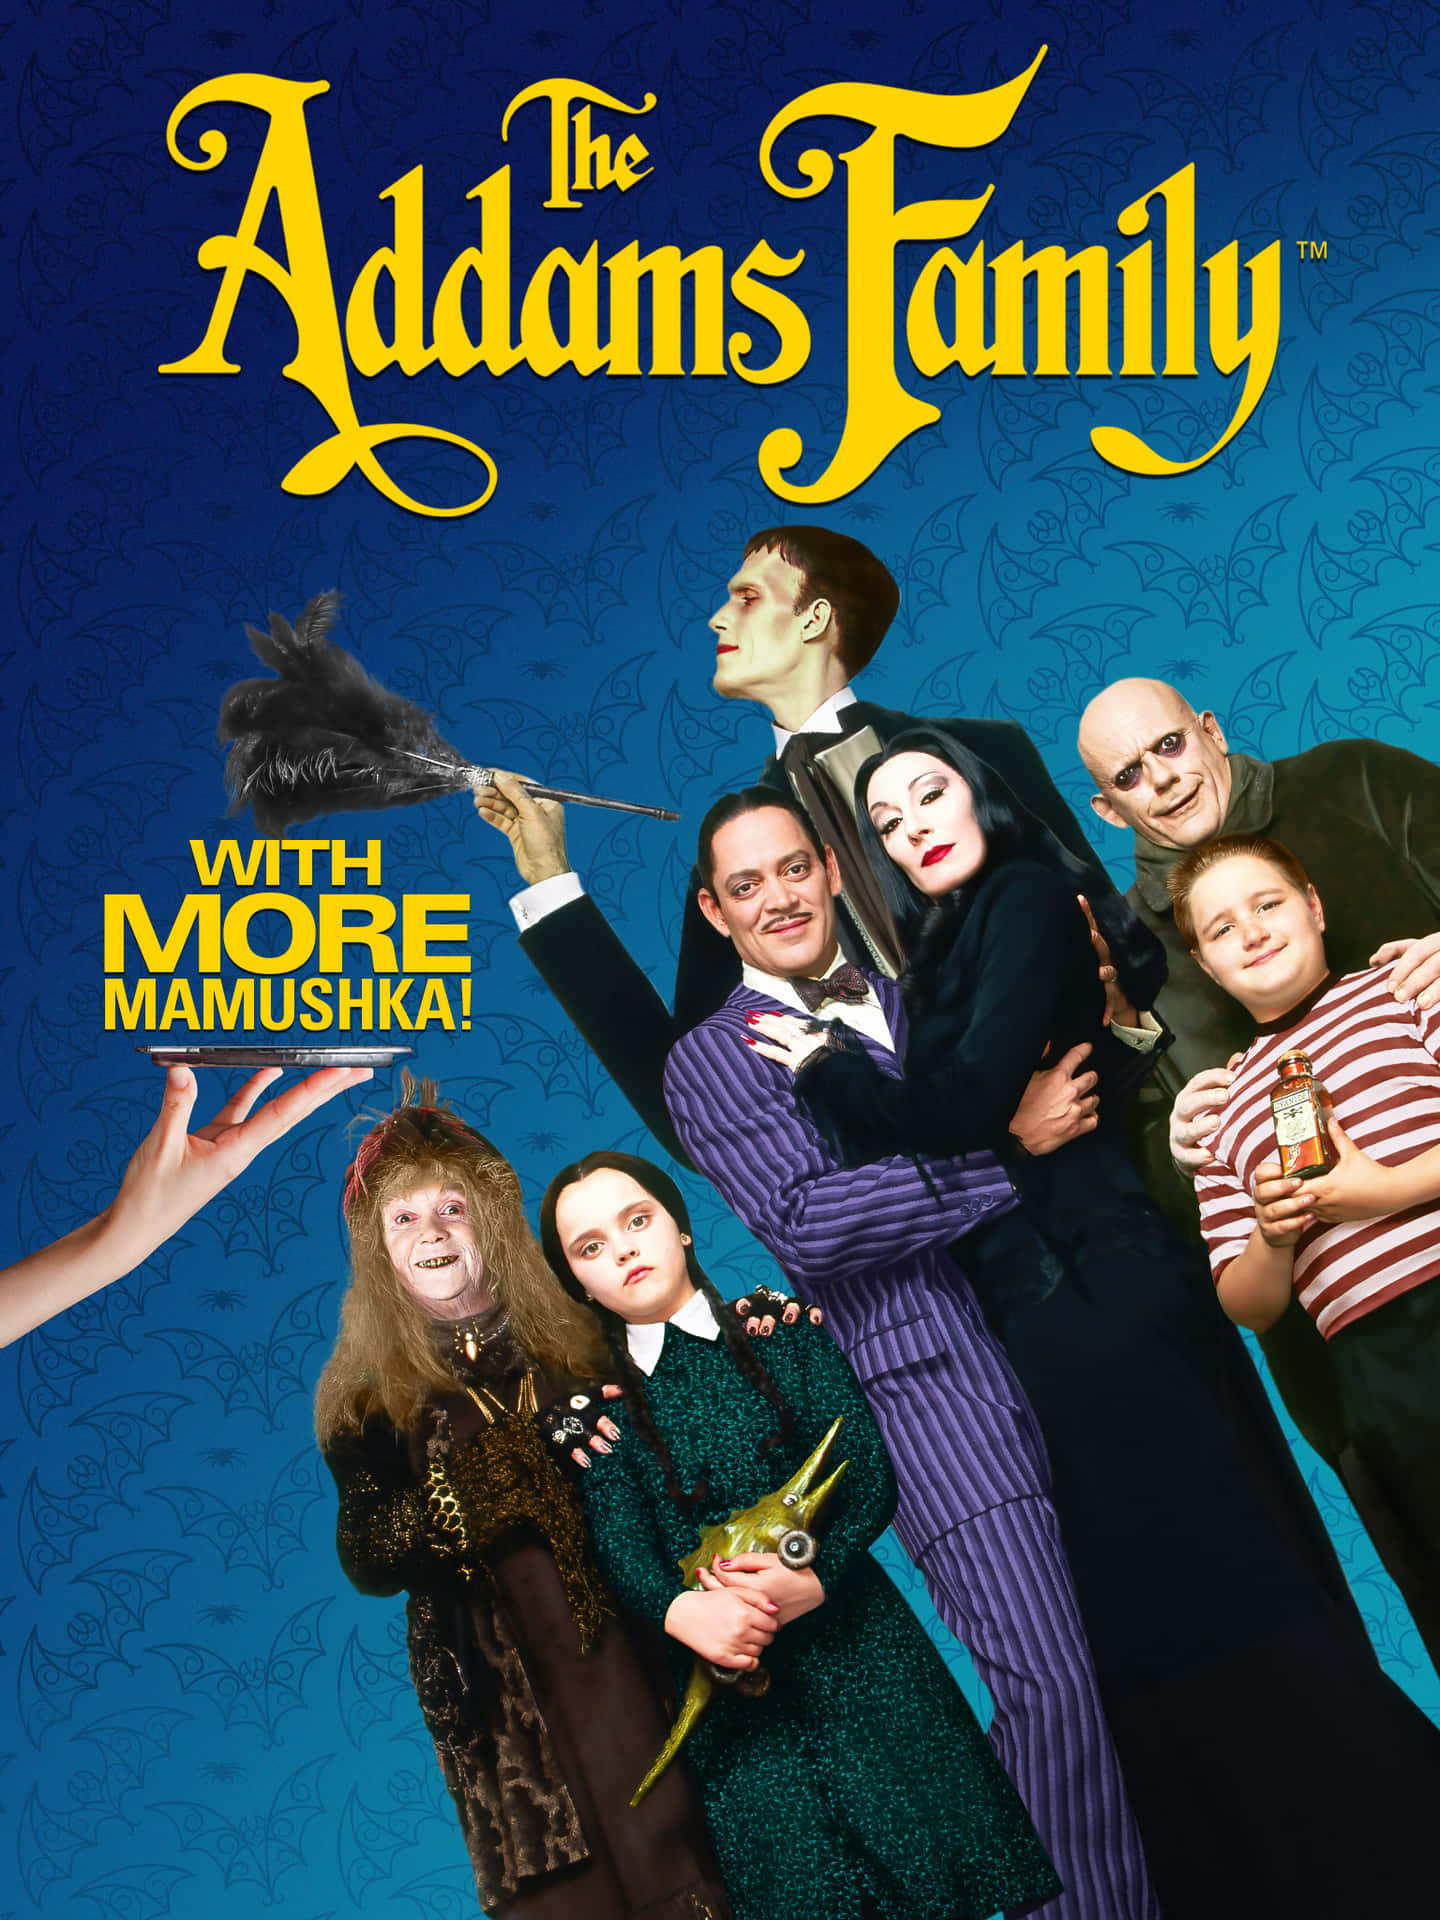 Laemblemática Familia Addams